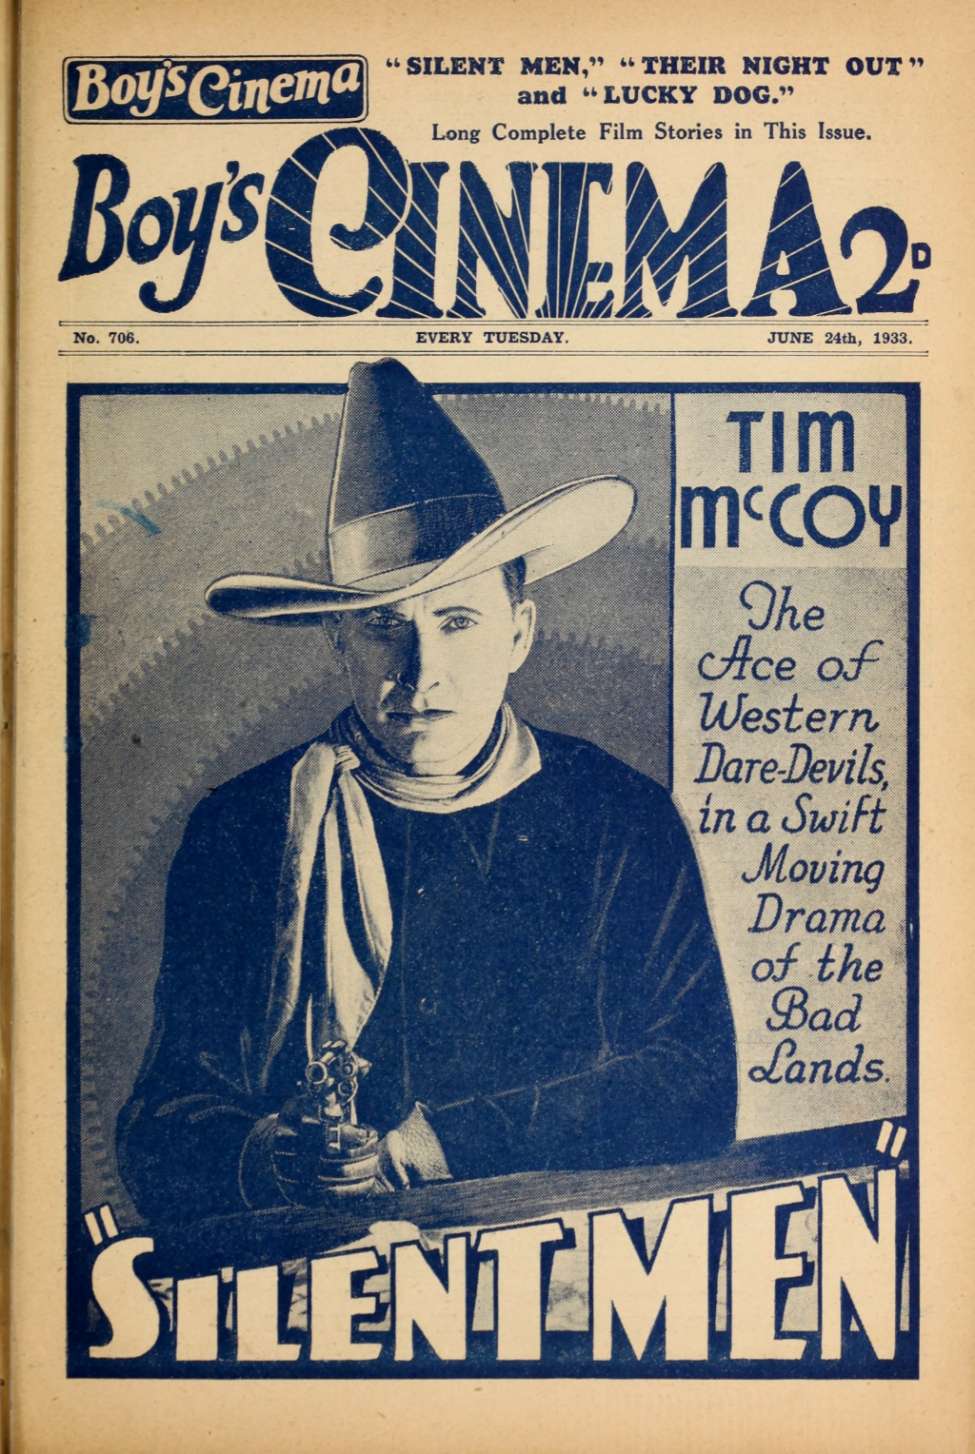 Book Cover For Boy's Cinema 706 - Silent Men - Tim McCoy